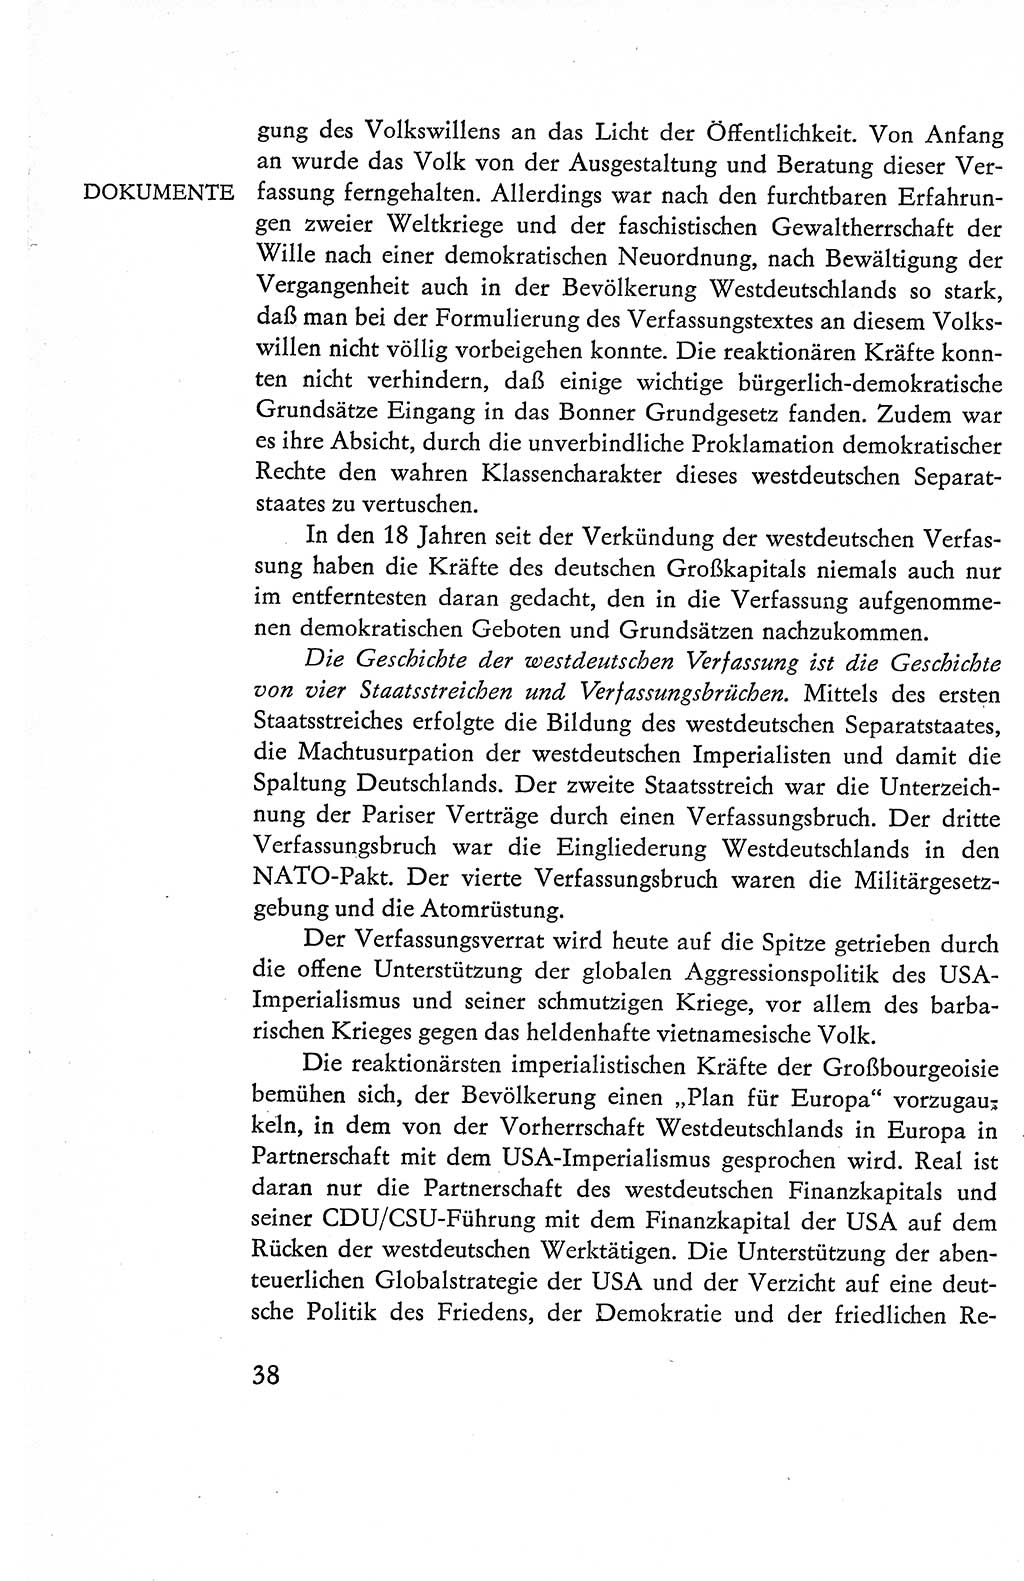 Verfassung der Deutschen Demokratischen Republik (DDR), Dokumente, Kommentar 1969, Band 1, Seite 38 (Verf. DDR Dok. Komm. 1969, Bd. 1, S. 38)